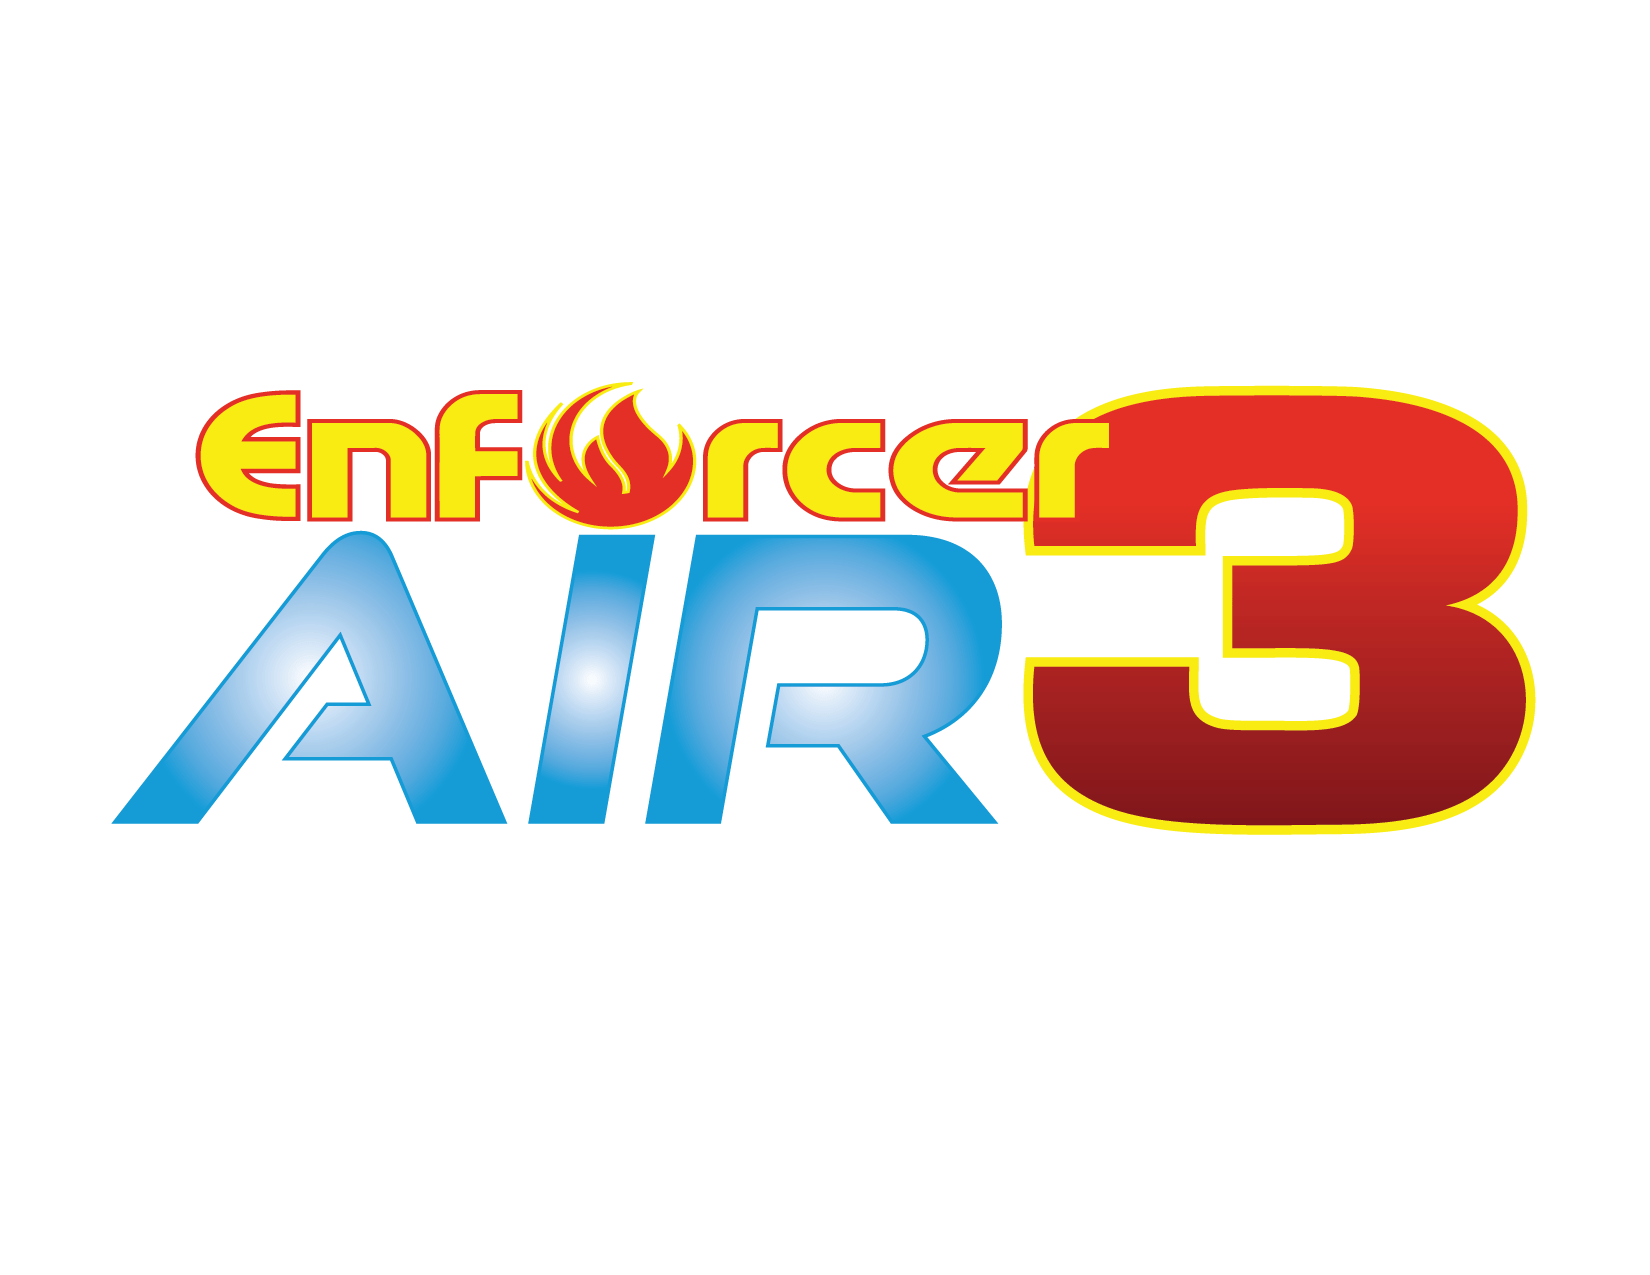 Enforcer AIR 3